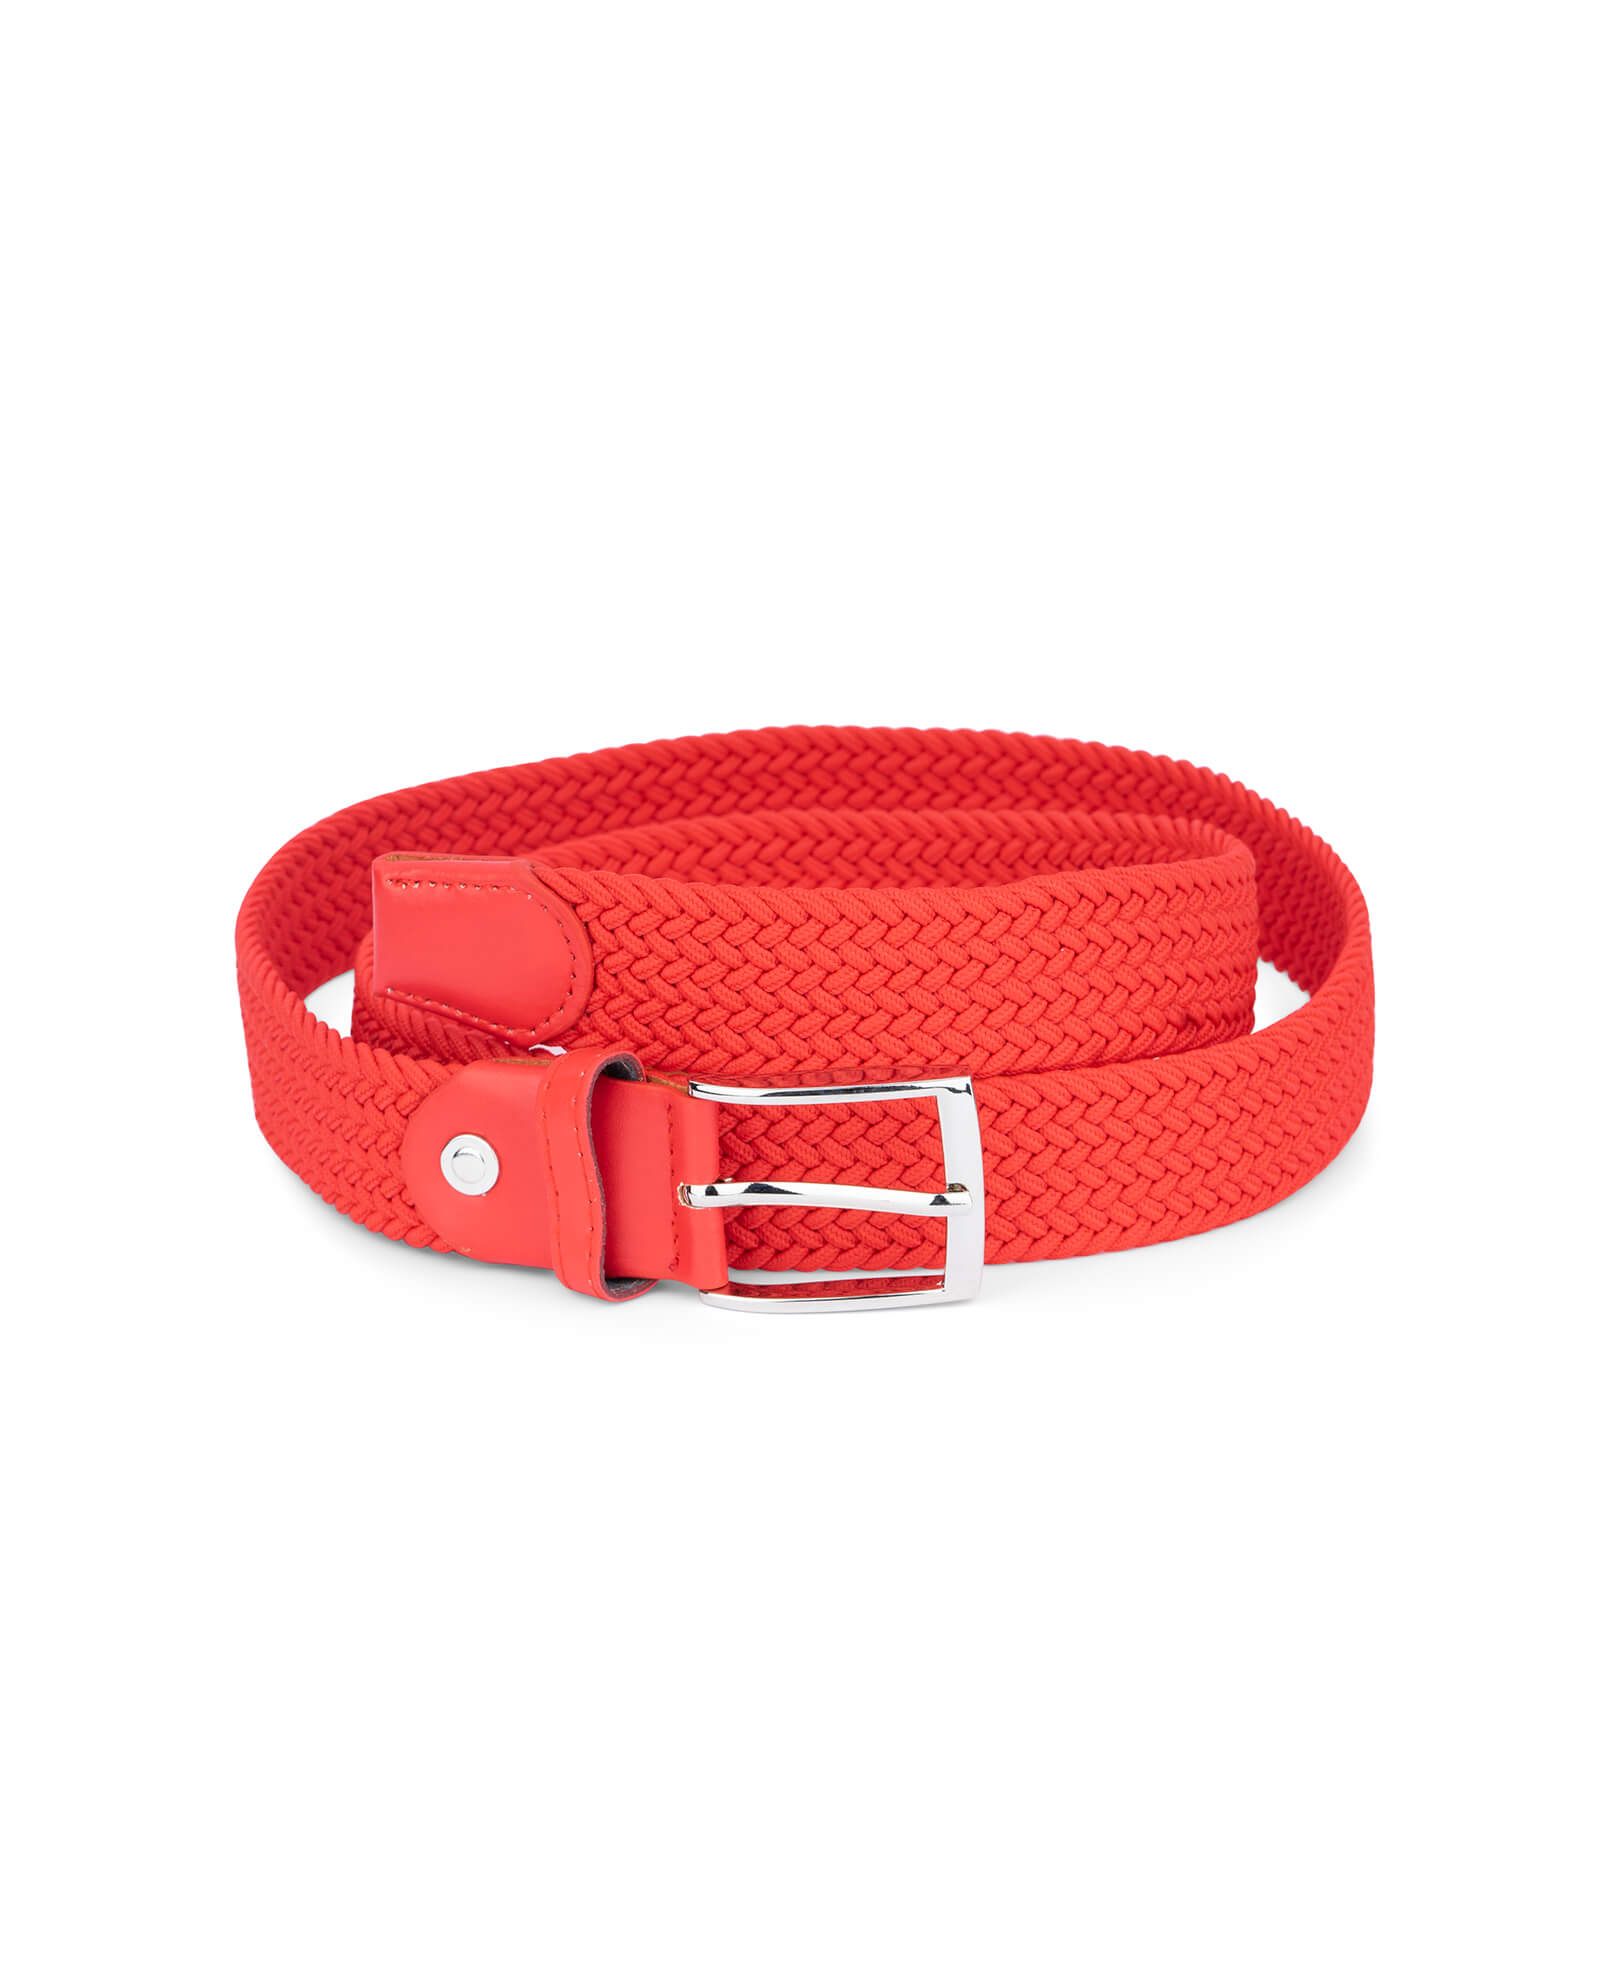 Buy Mens Red Stretch Belt | LeatherBeltsOnline.com